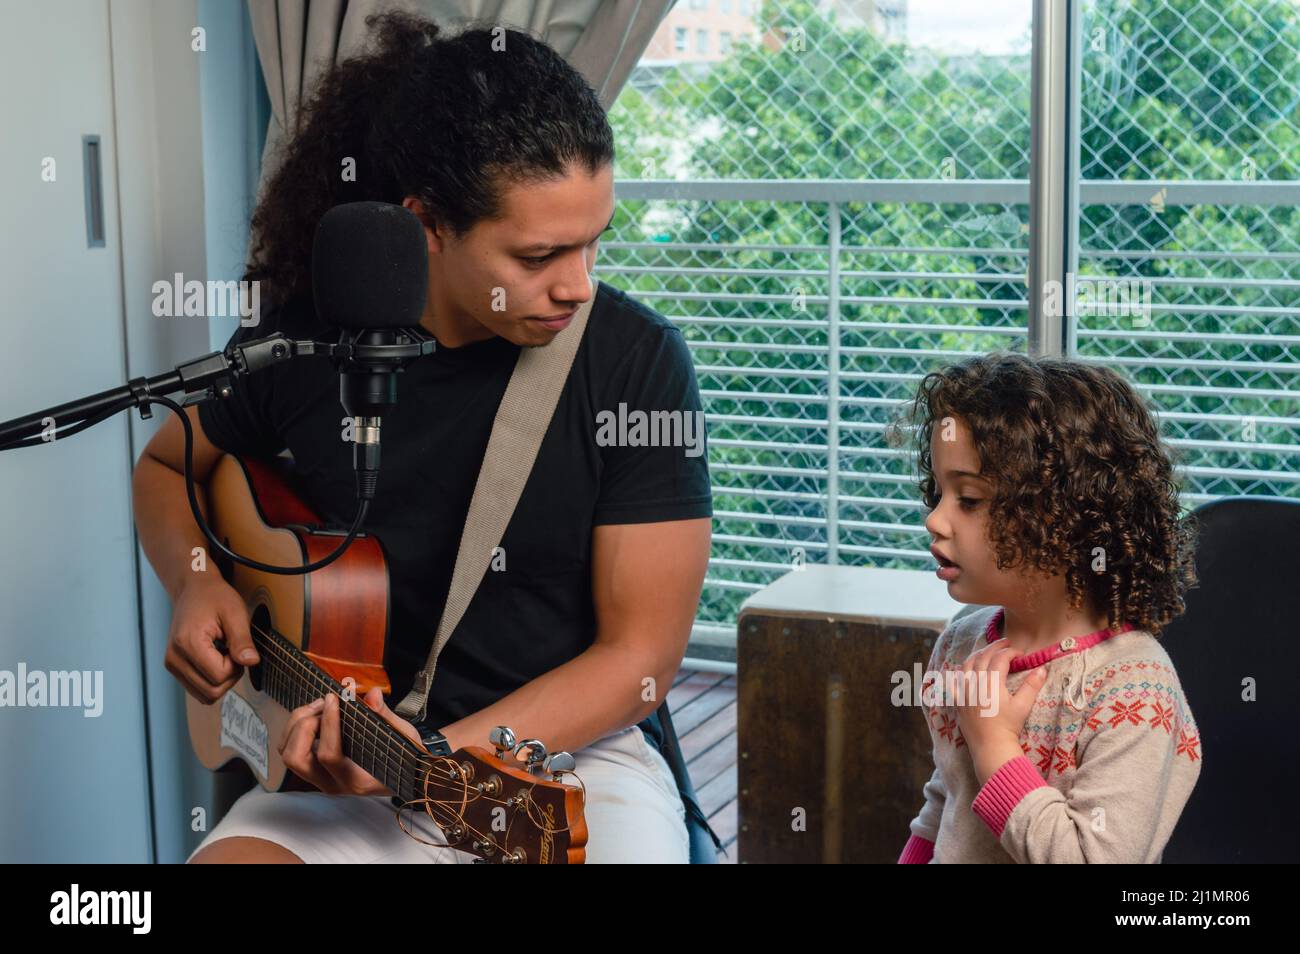 Der kaukasische junge Vater spielt Gitarre und sieht seiner Tochter zu, die mit ihm singt, drinnen im heimischen Studio sitzt und in der Familie zusammen Musik macht. Stockfoto